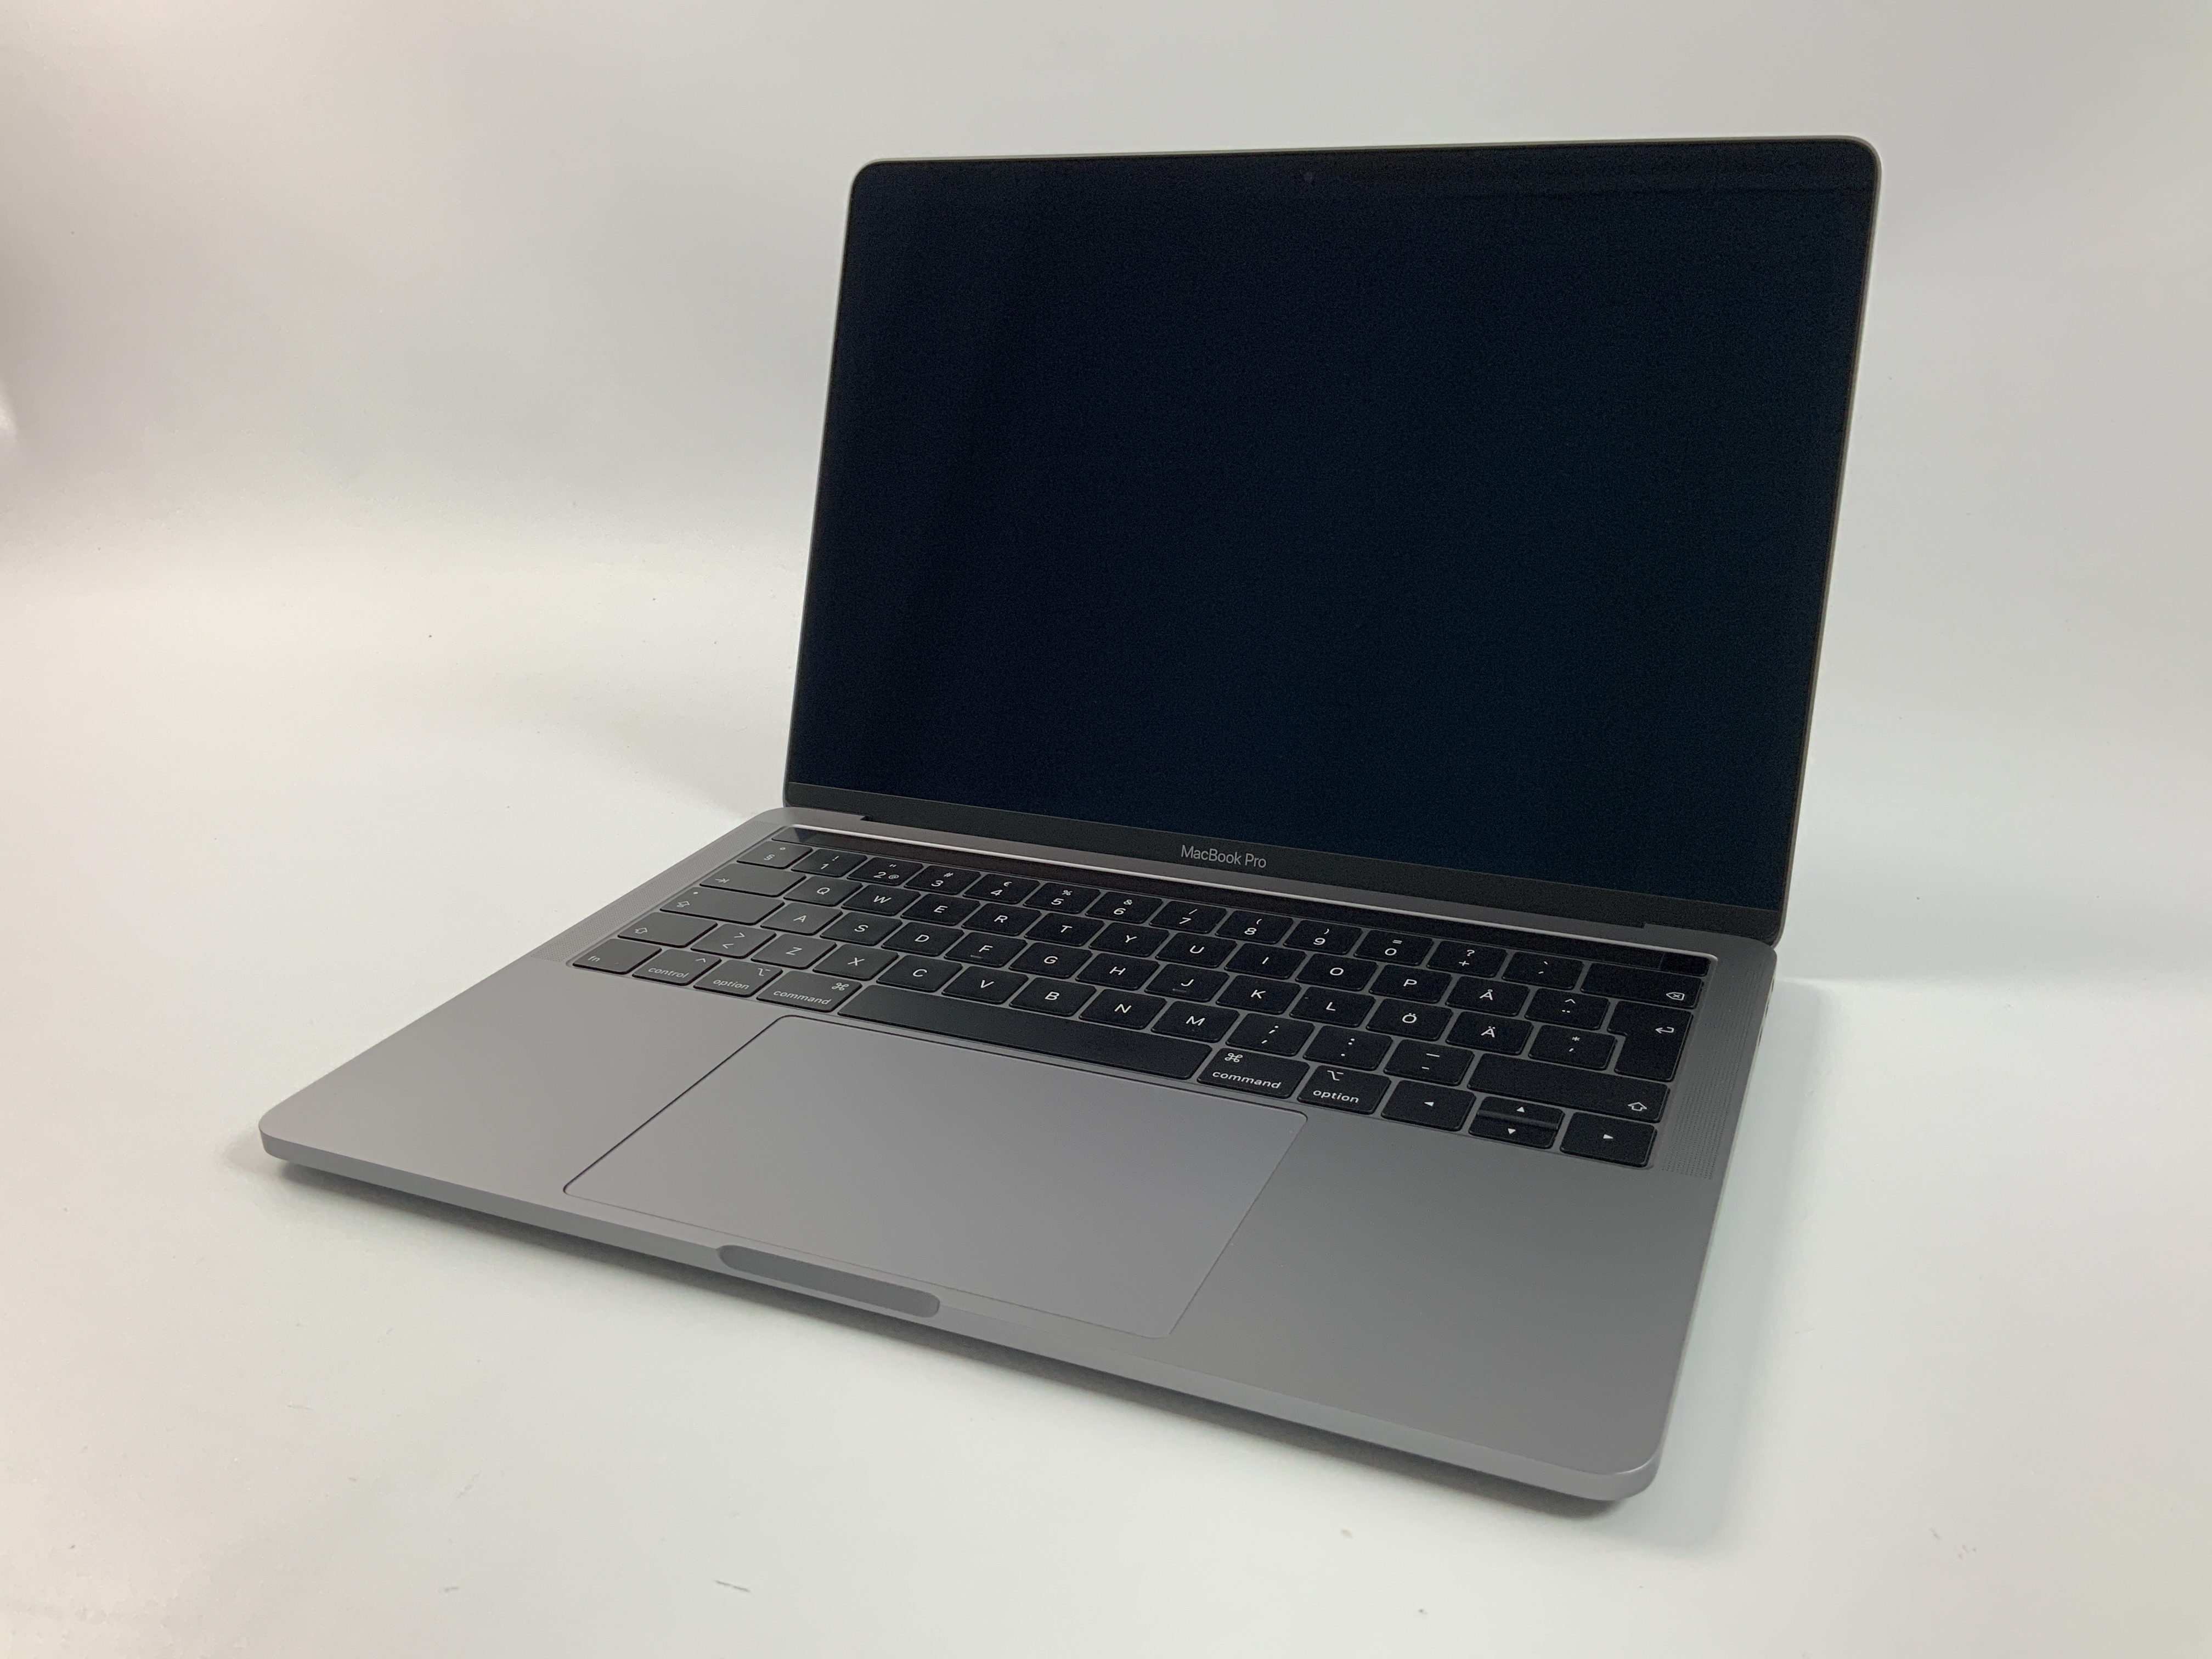 MacBook Pro 13" 4TBT Mid 2018 (Intel Quad-Core i5 2.3 GHz 8 GB RAM 512 GB SSD), Space Gray, Intel Quad-Core i5 2.3 GHz, 8 GB RAM, 512 GB SSD, obraz 1